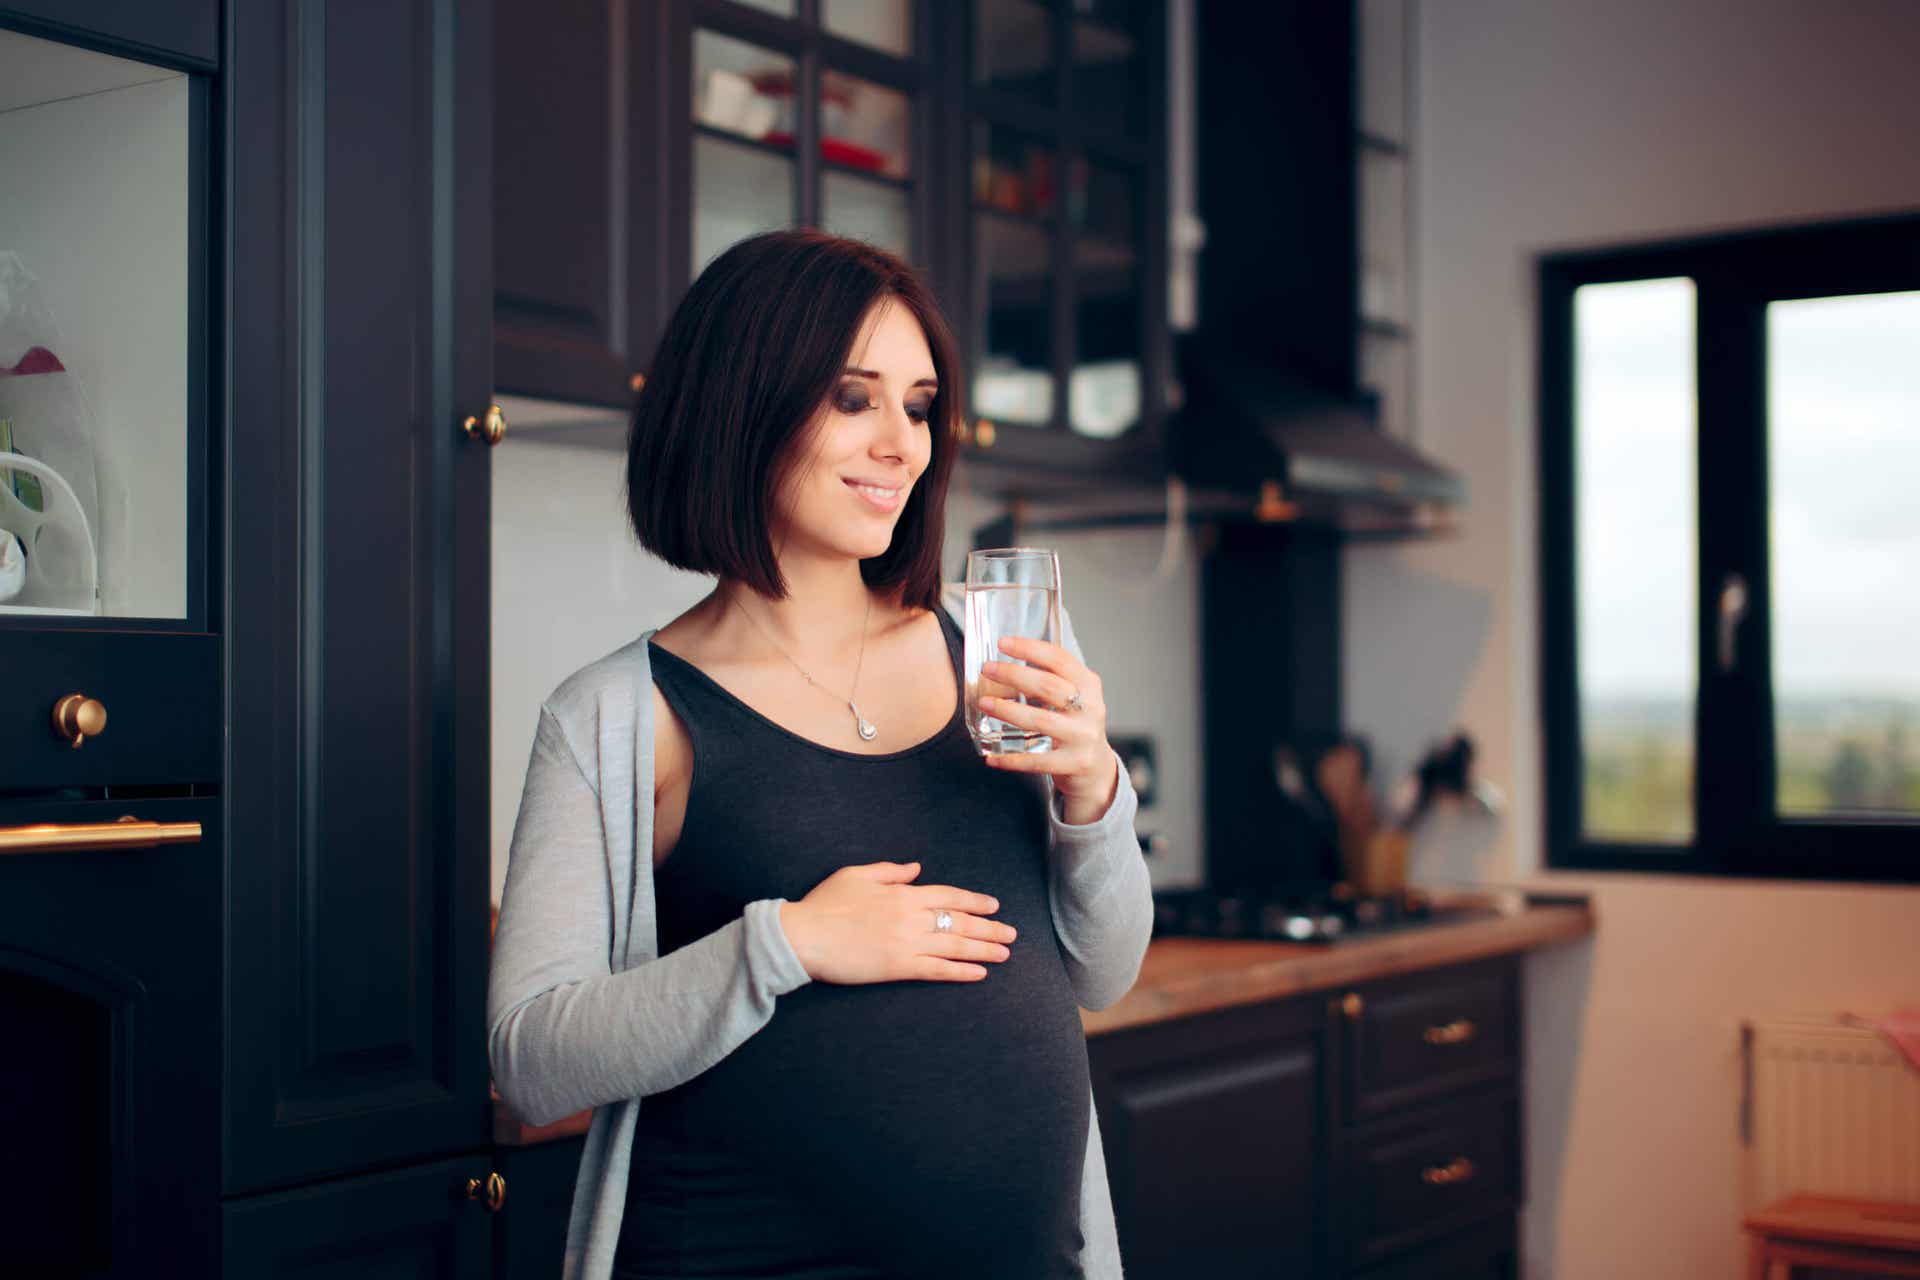 La sinusite pendant la grossesse peut être améliorée avec l'hydratation.